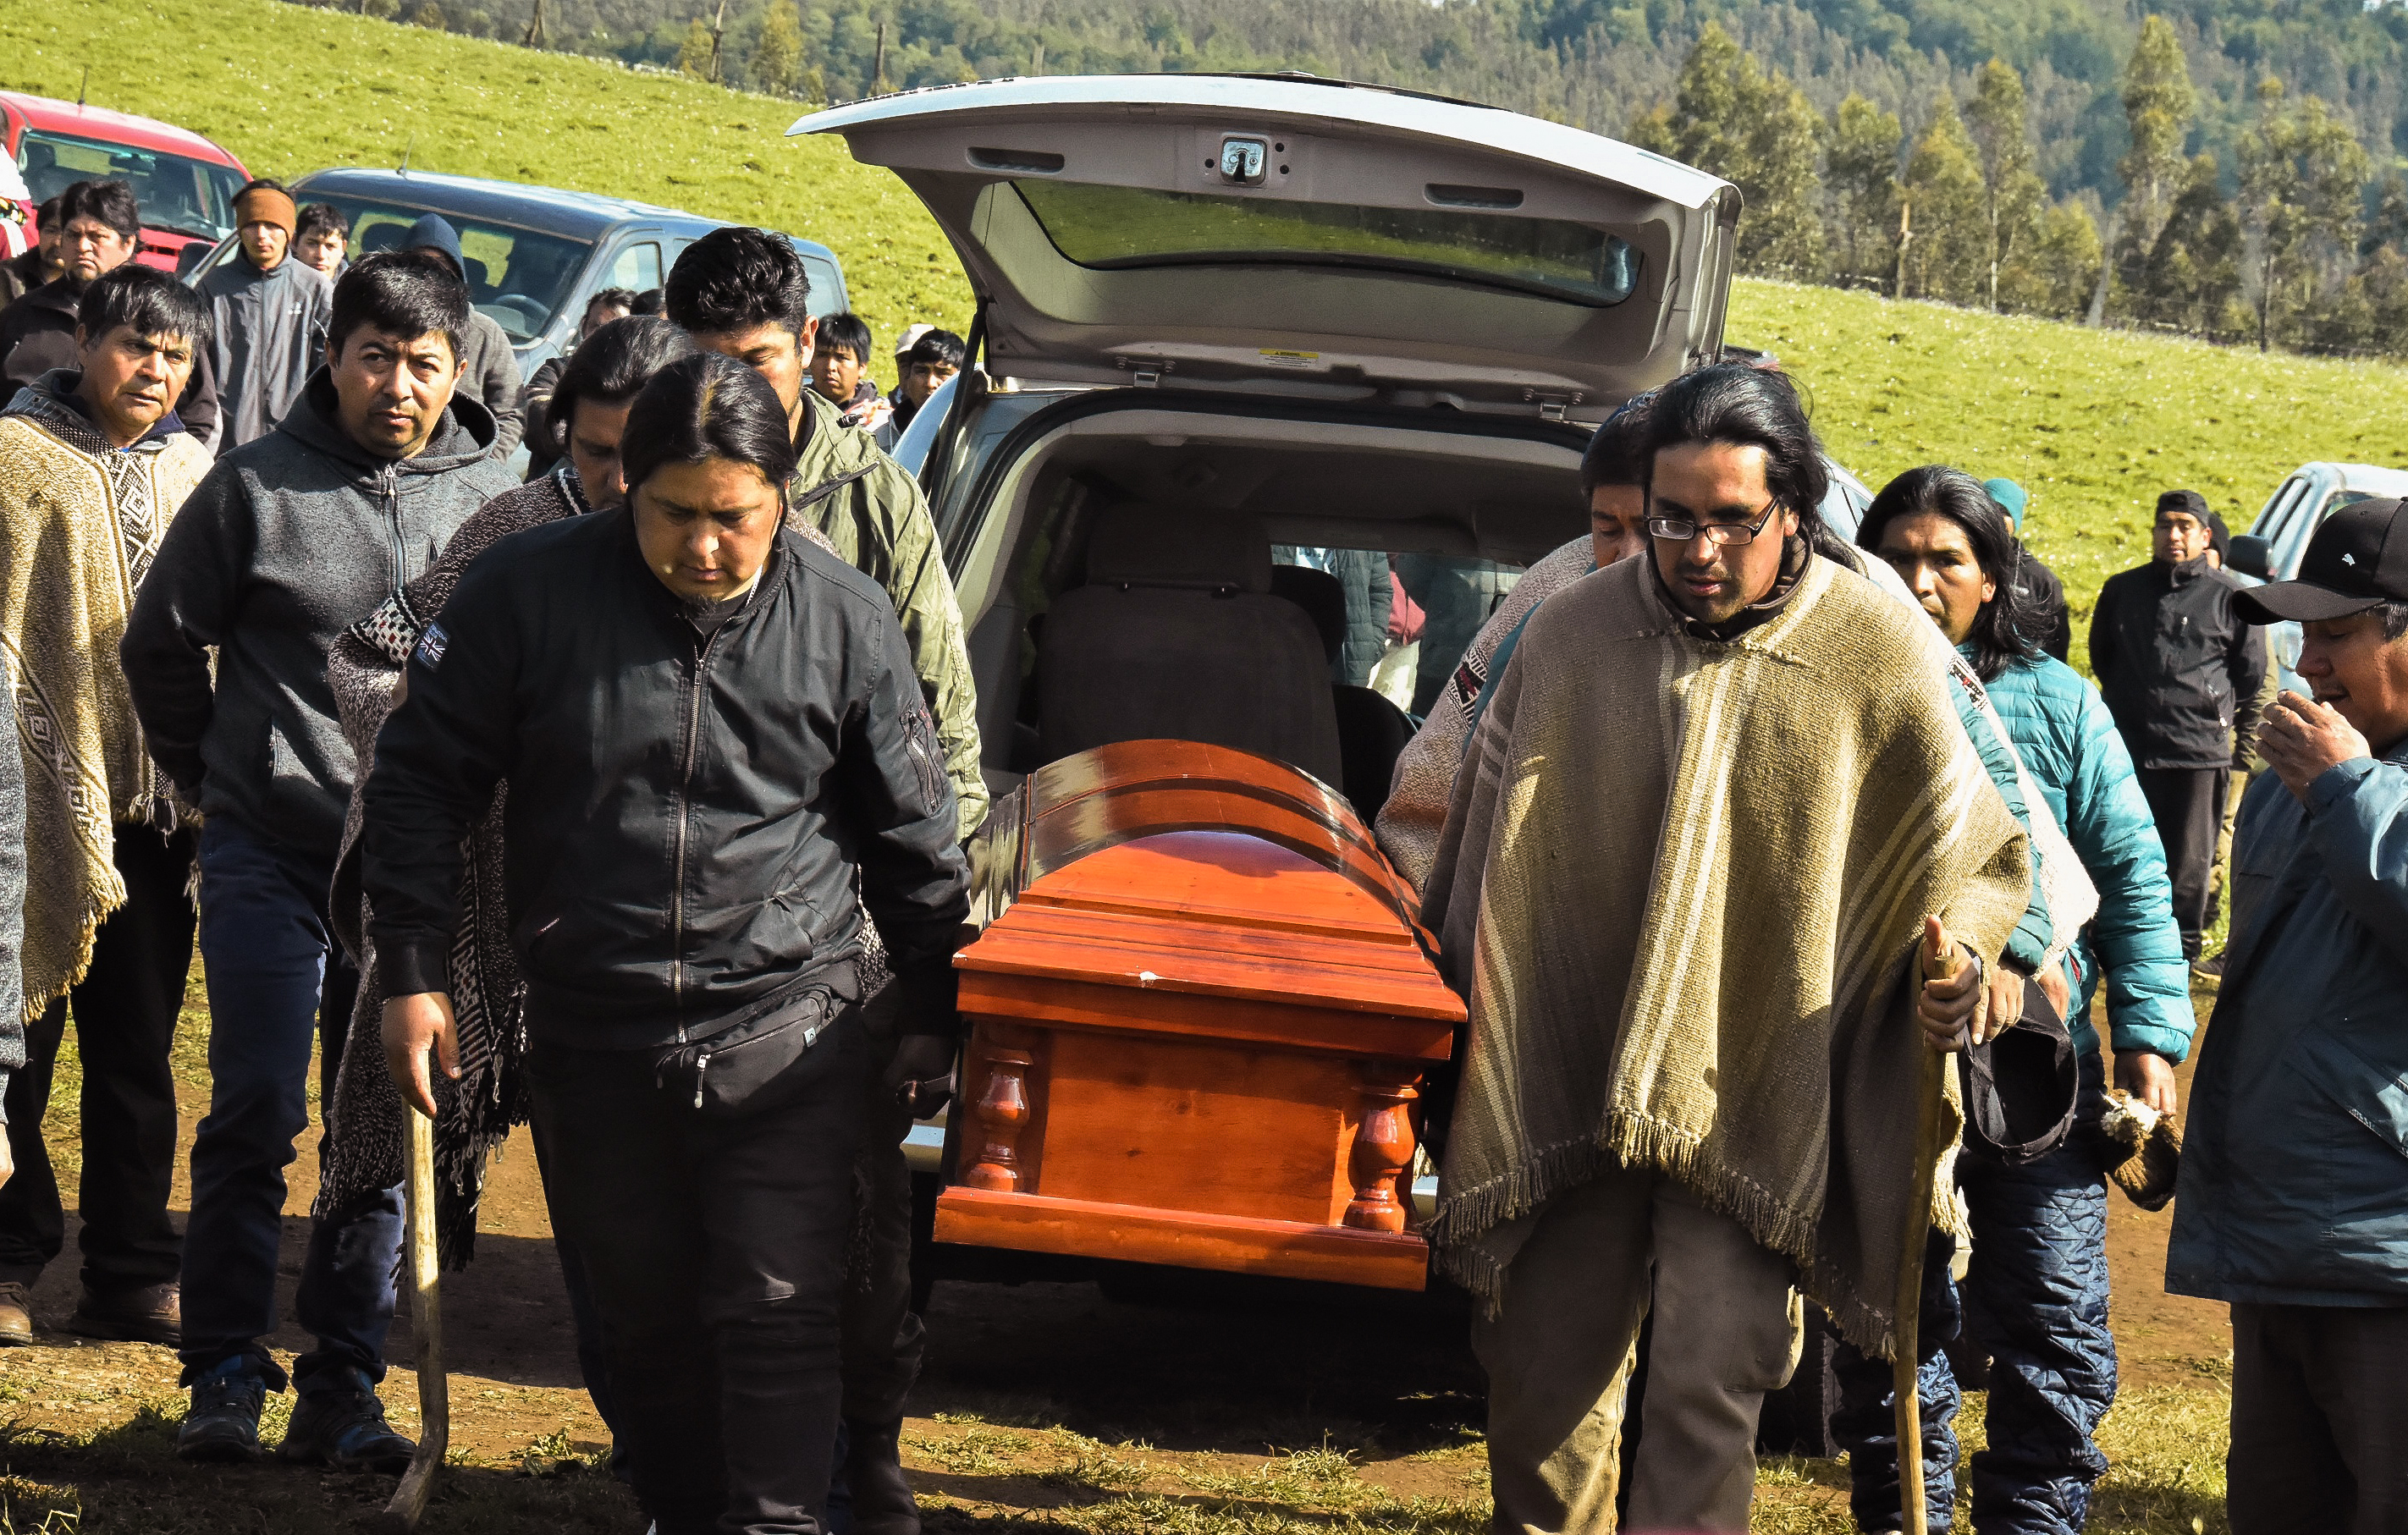 15 de Noviembre de 2018 / ERCILLA En la comunidad de Temucuicui, comuneros mapuche bajan de la carroza el féretro con los restos de Camilo Catrillanca, joven asesinado durante un operativo policial del Comando Jungla. FOTO: HECTOR ANDRADE / AGENCIAUNO